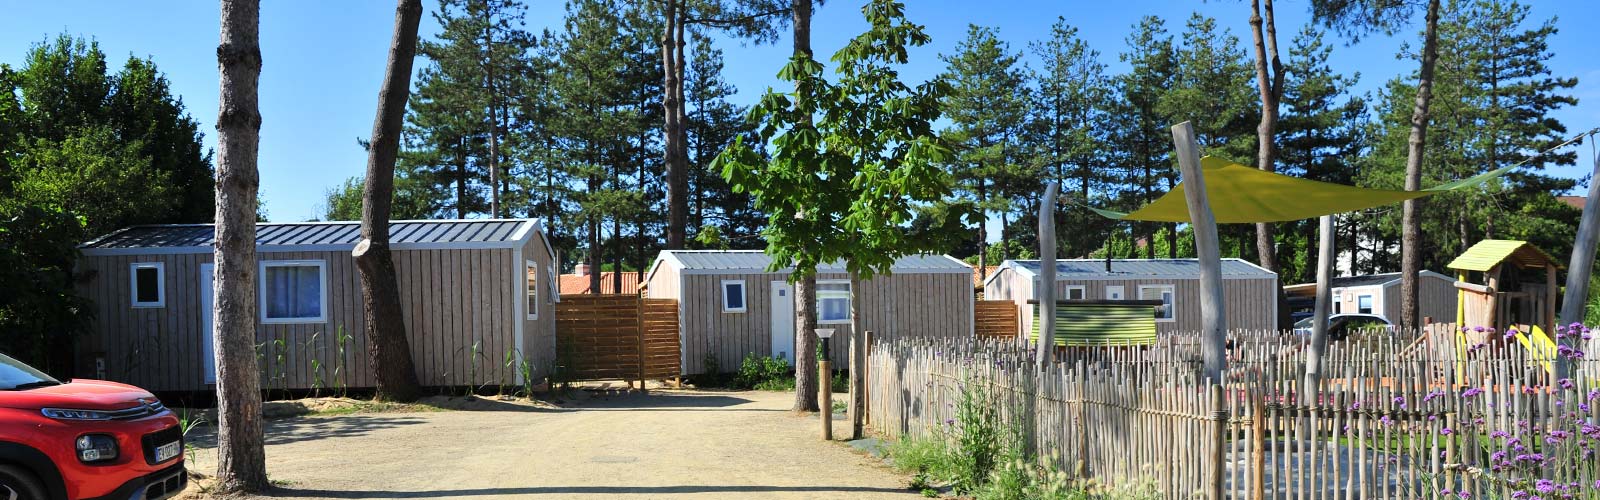 Dorf der Mobilheime auf dem Campingplatz Le Fief in Saint-Brevin in der Loire-Atlantique